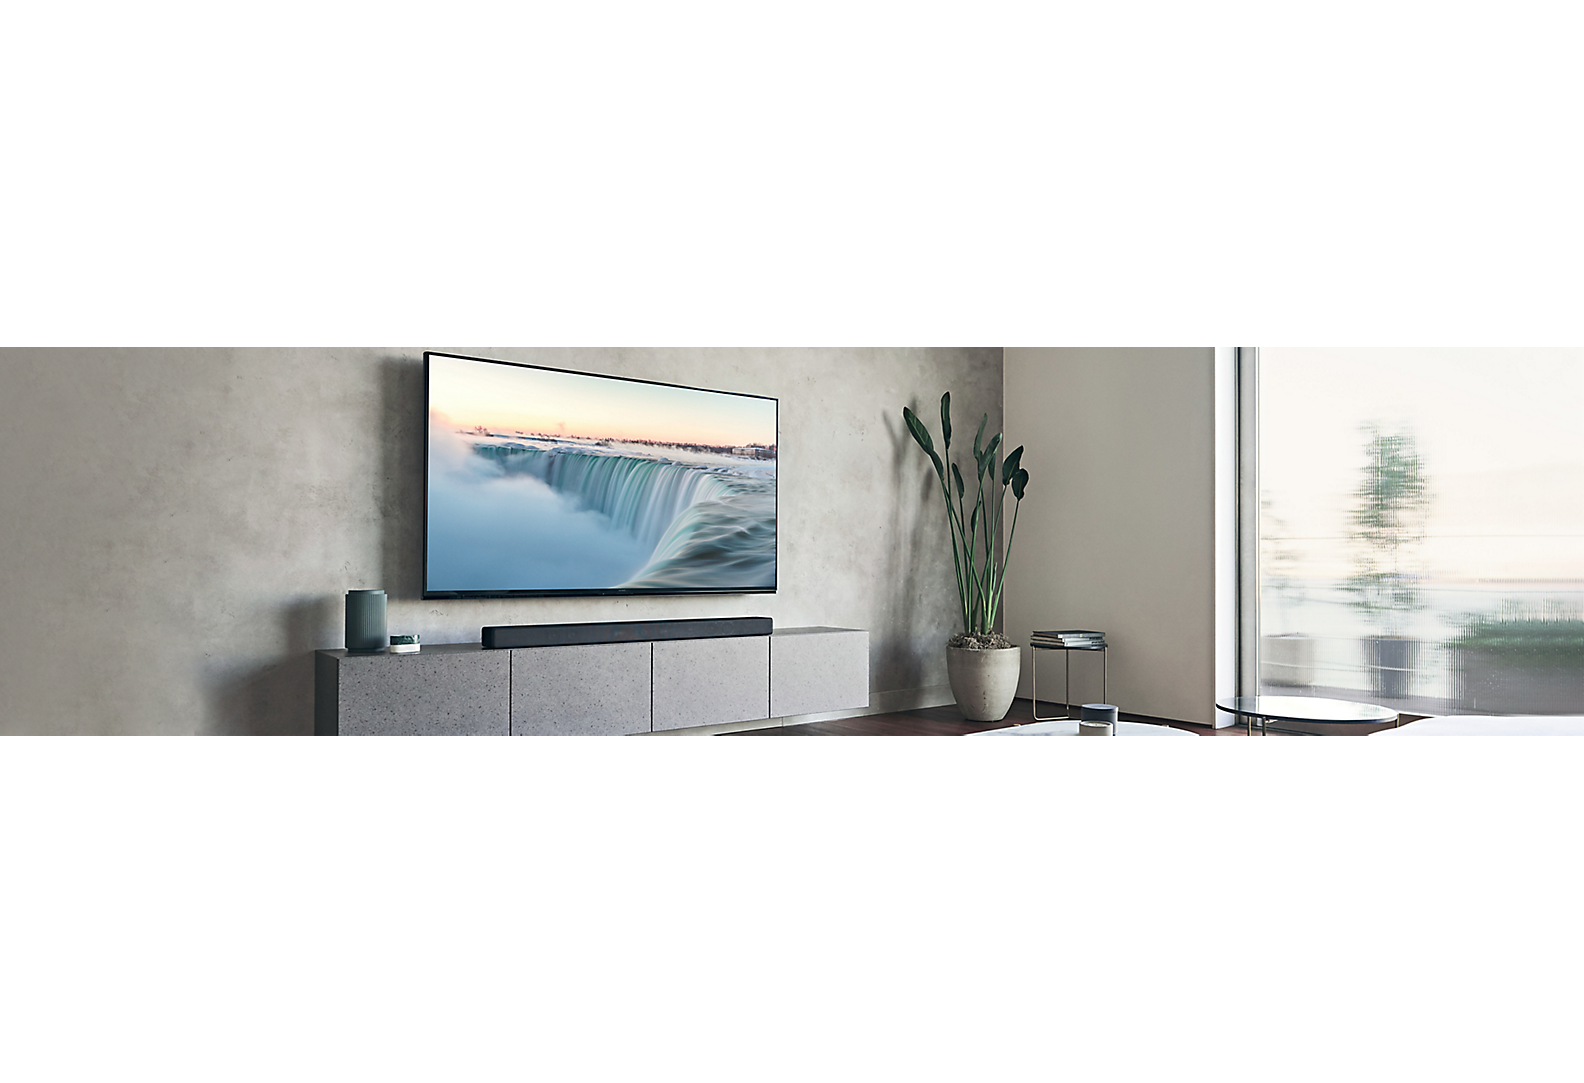 Televizor na šedé stěně v do šeda sladěném obývacím pokoji s výzdobou.